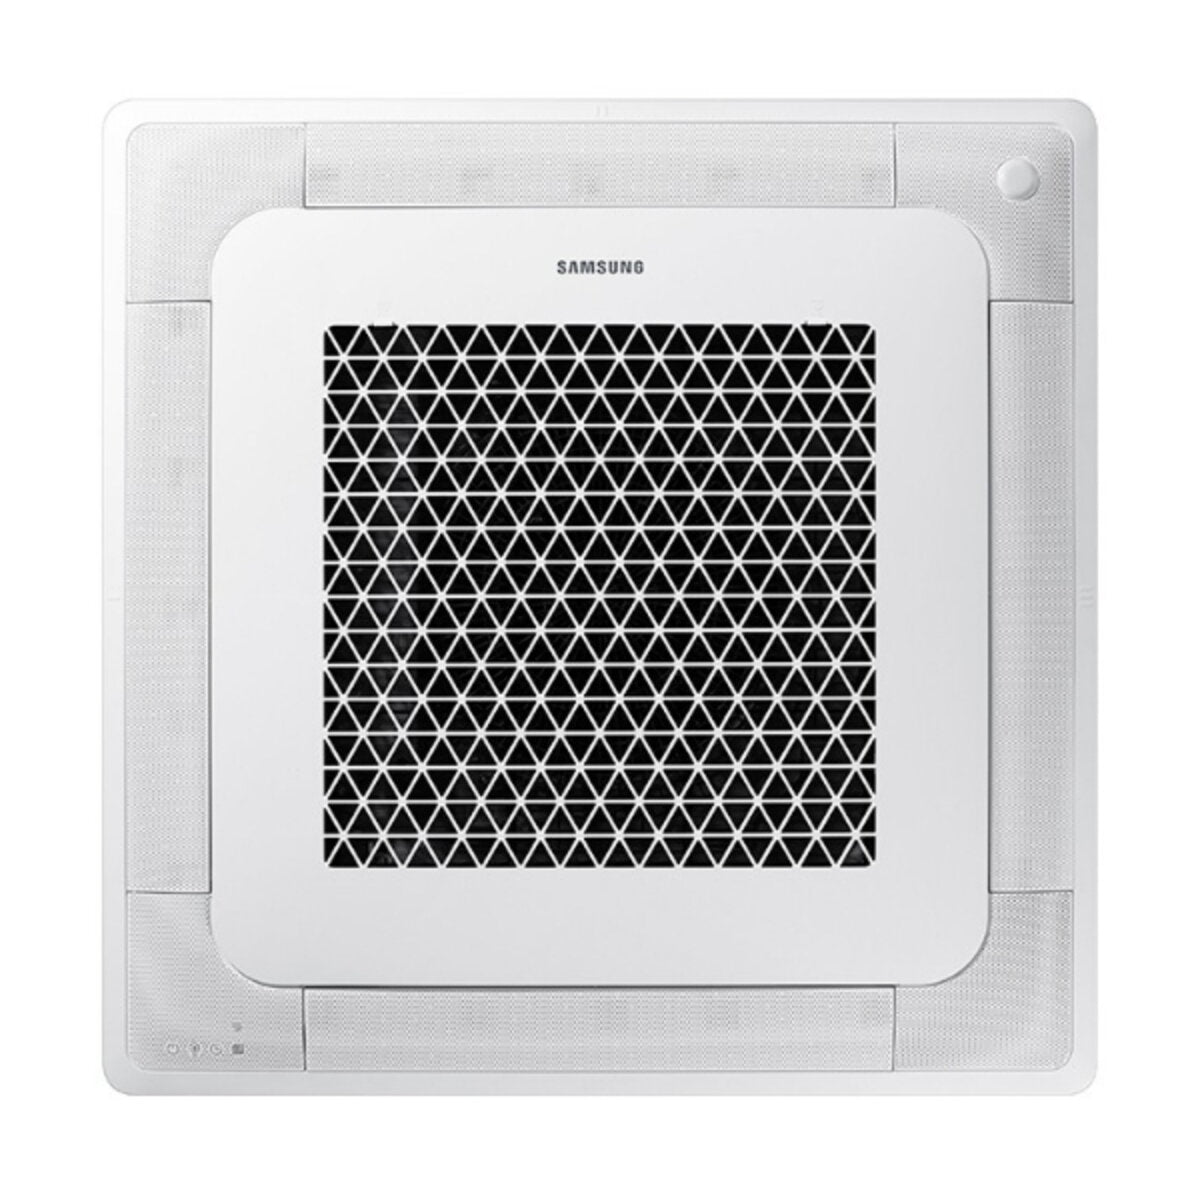 Samsung Air conditioner Windfree 4-way trial split 12000 + 12000 + 12000 BTU inverter A ++ outdoor unit 8.0 kW